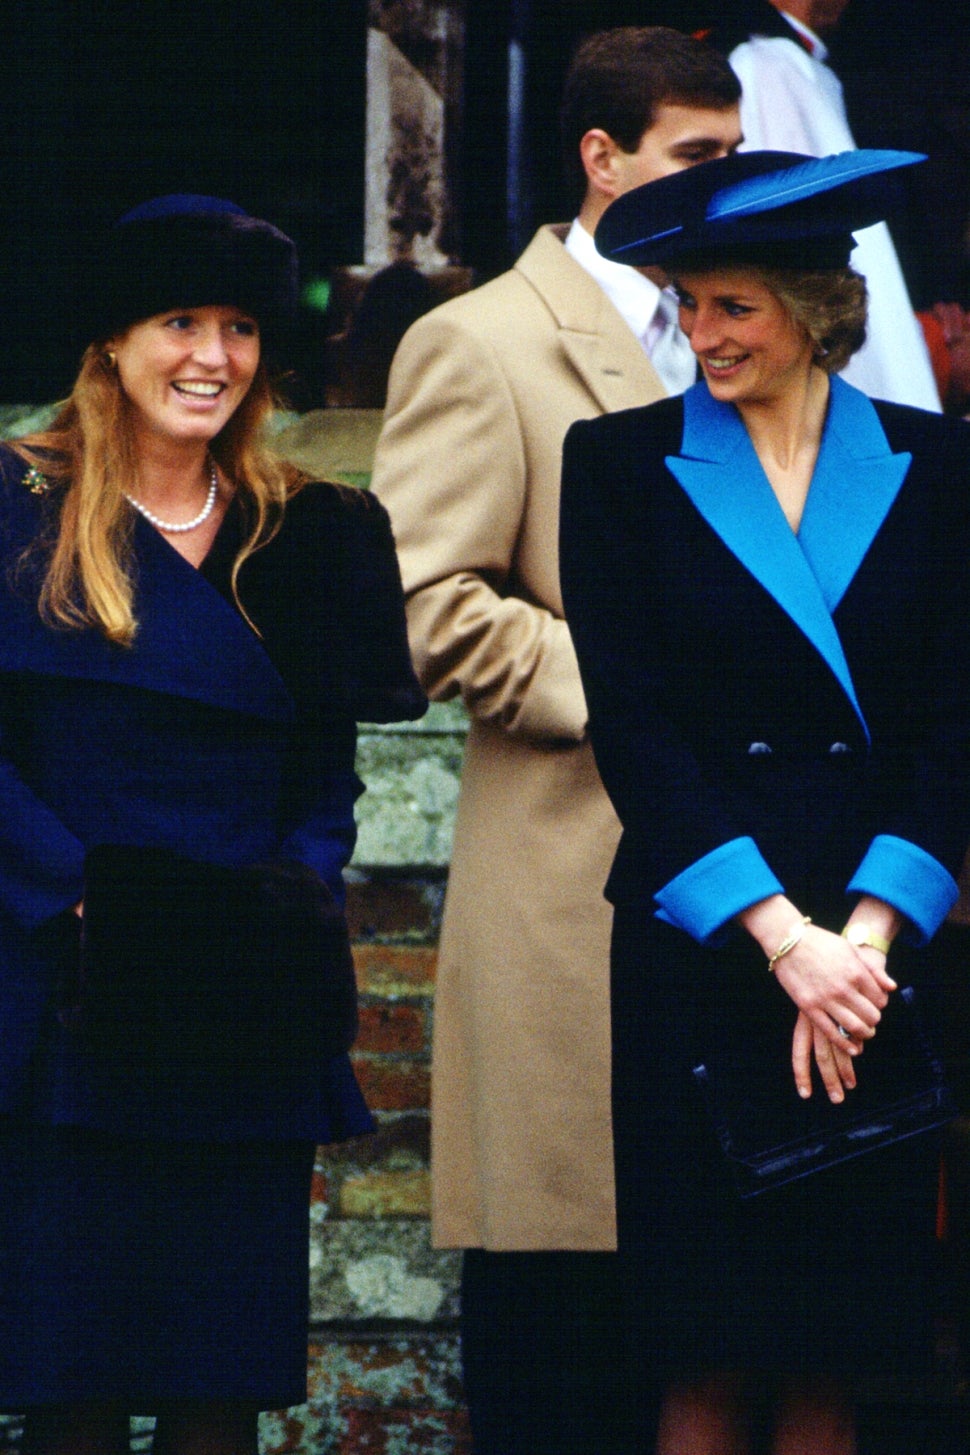 Sarah Ferguson and Princess Diana 